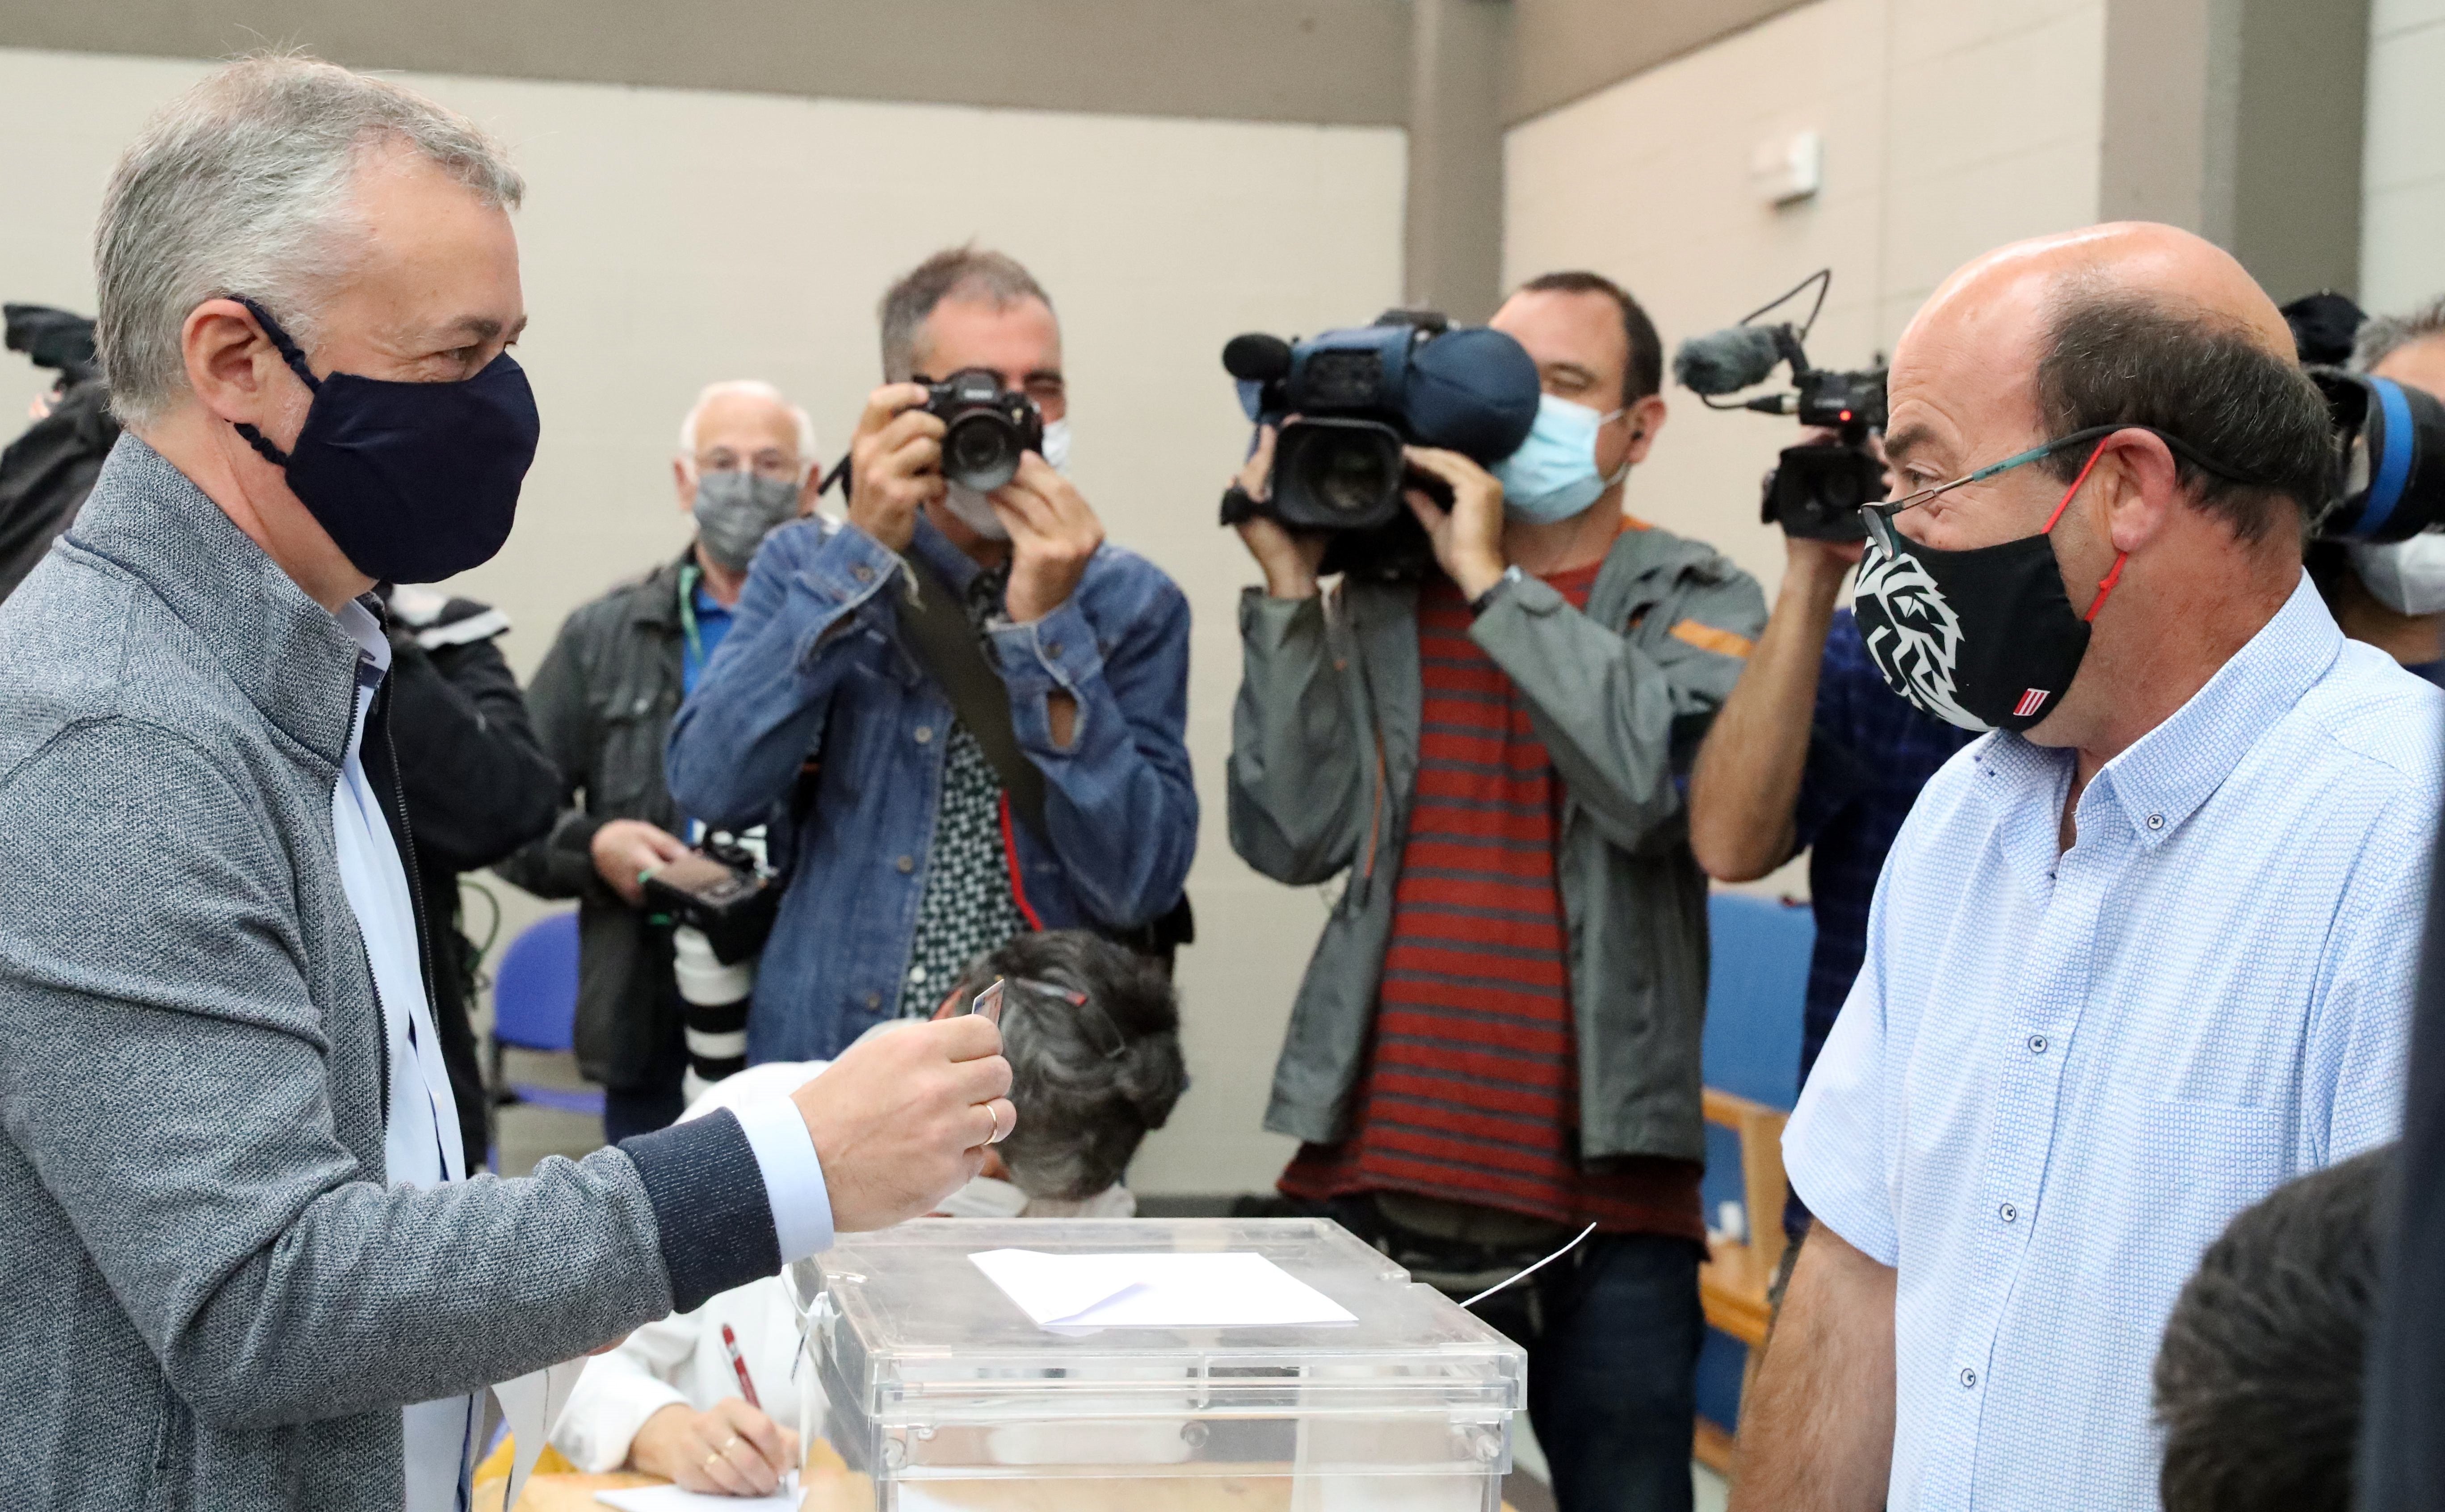 La participació en les eleccions basques s'ensorra: 8,36 punts menys